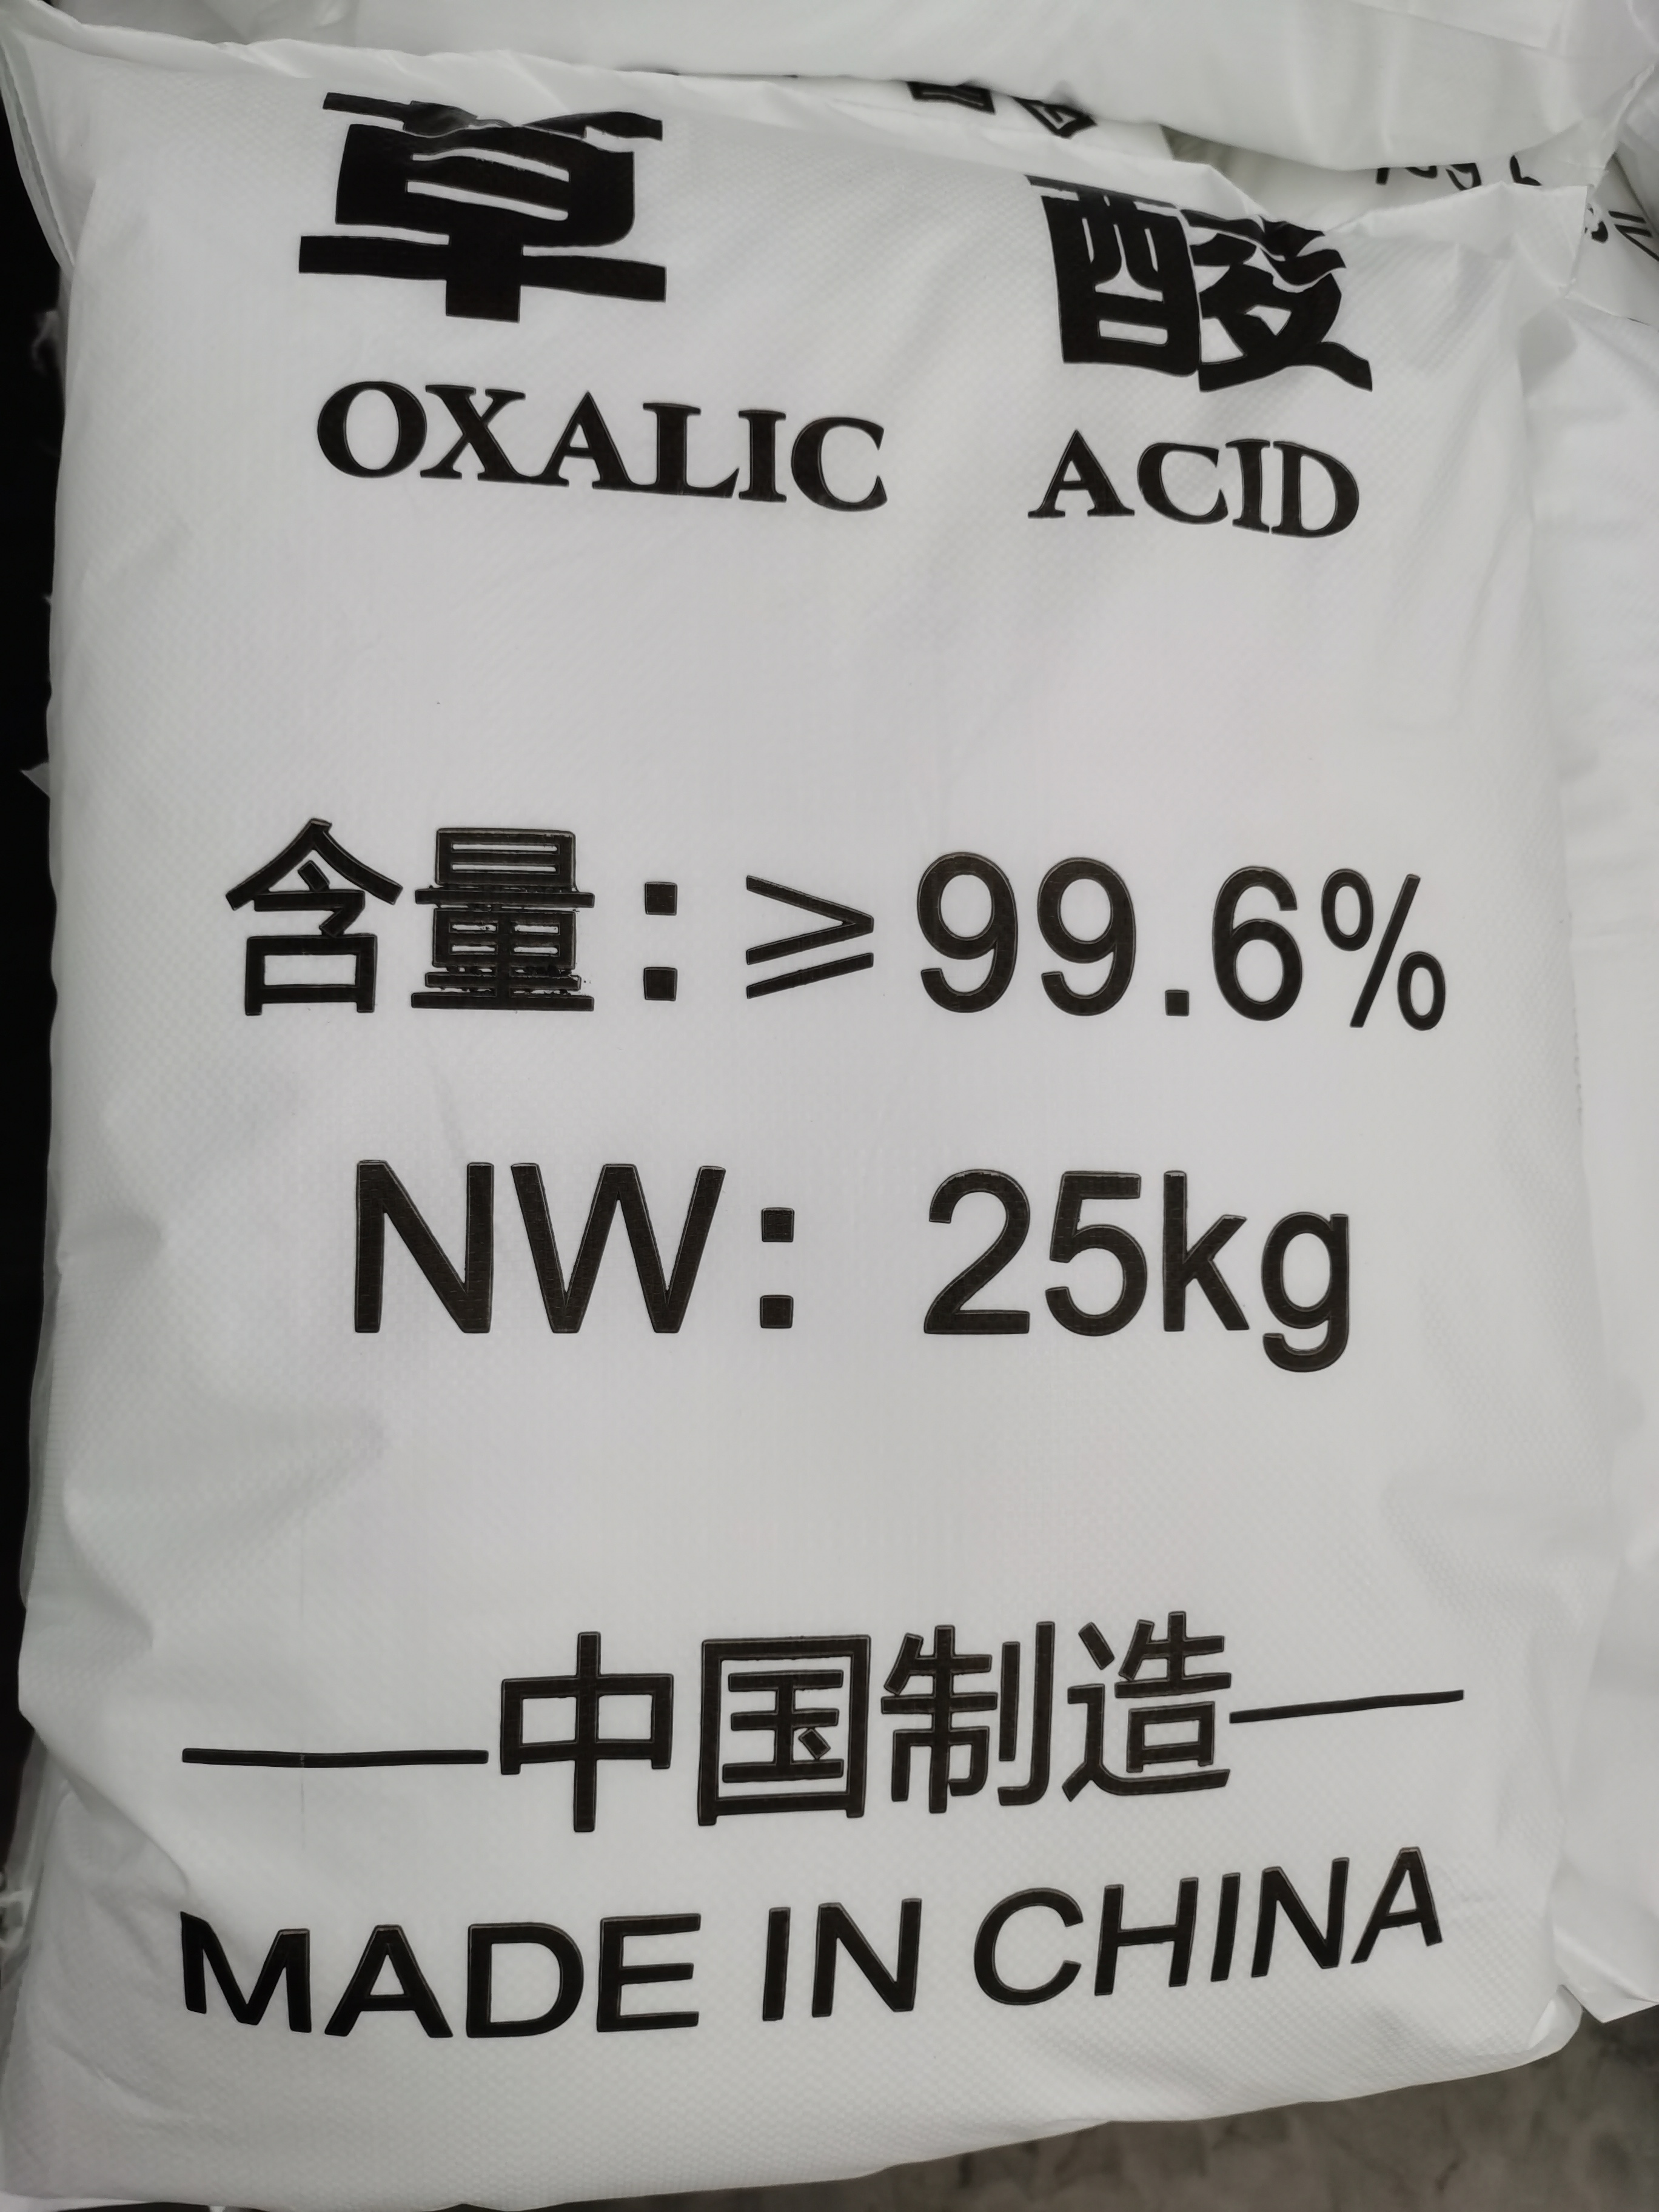 Oxalic Acid Matallurgy Industry 99.6%